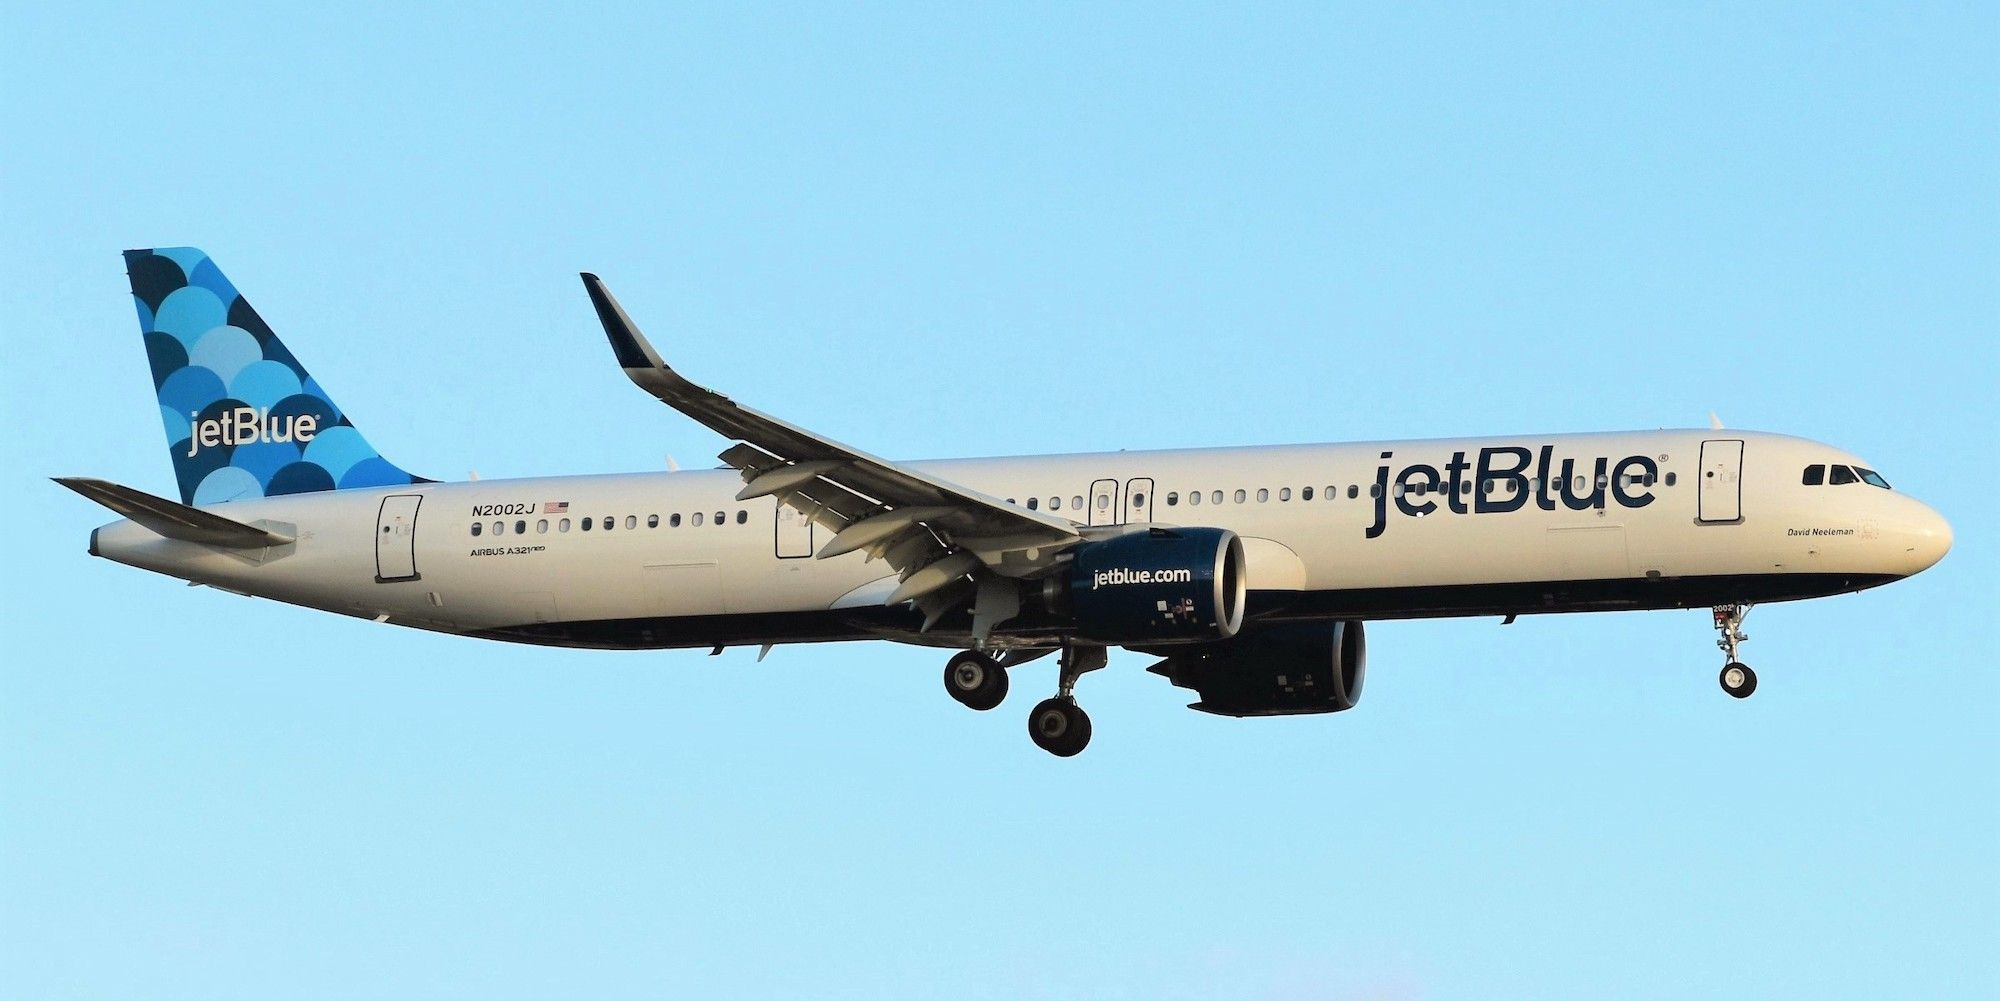 JetBlue a321